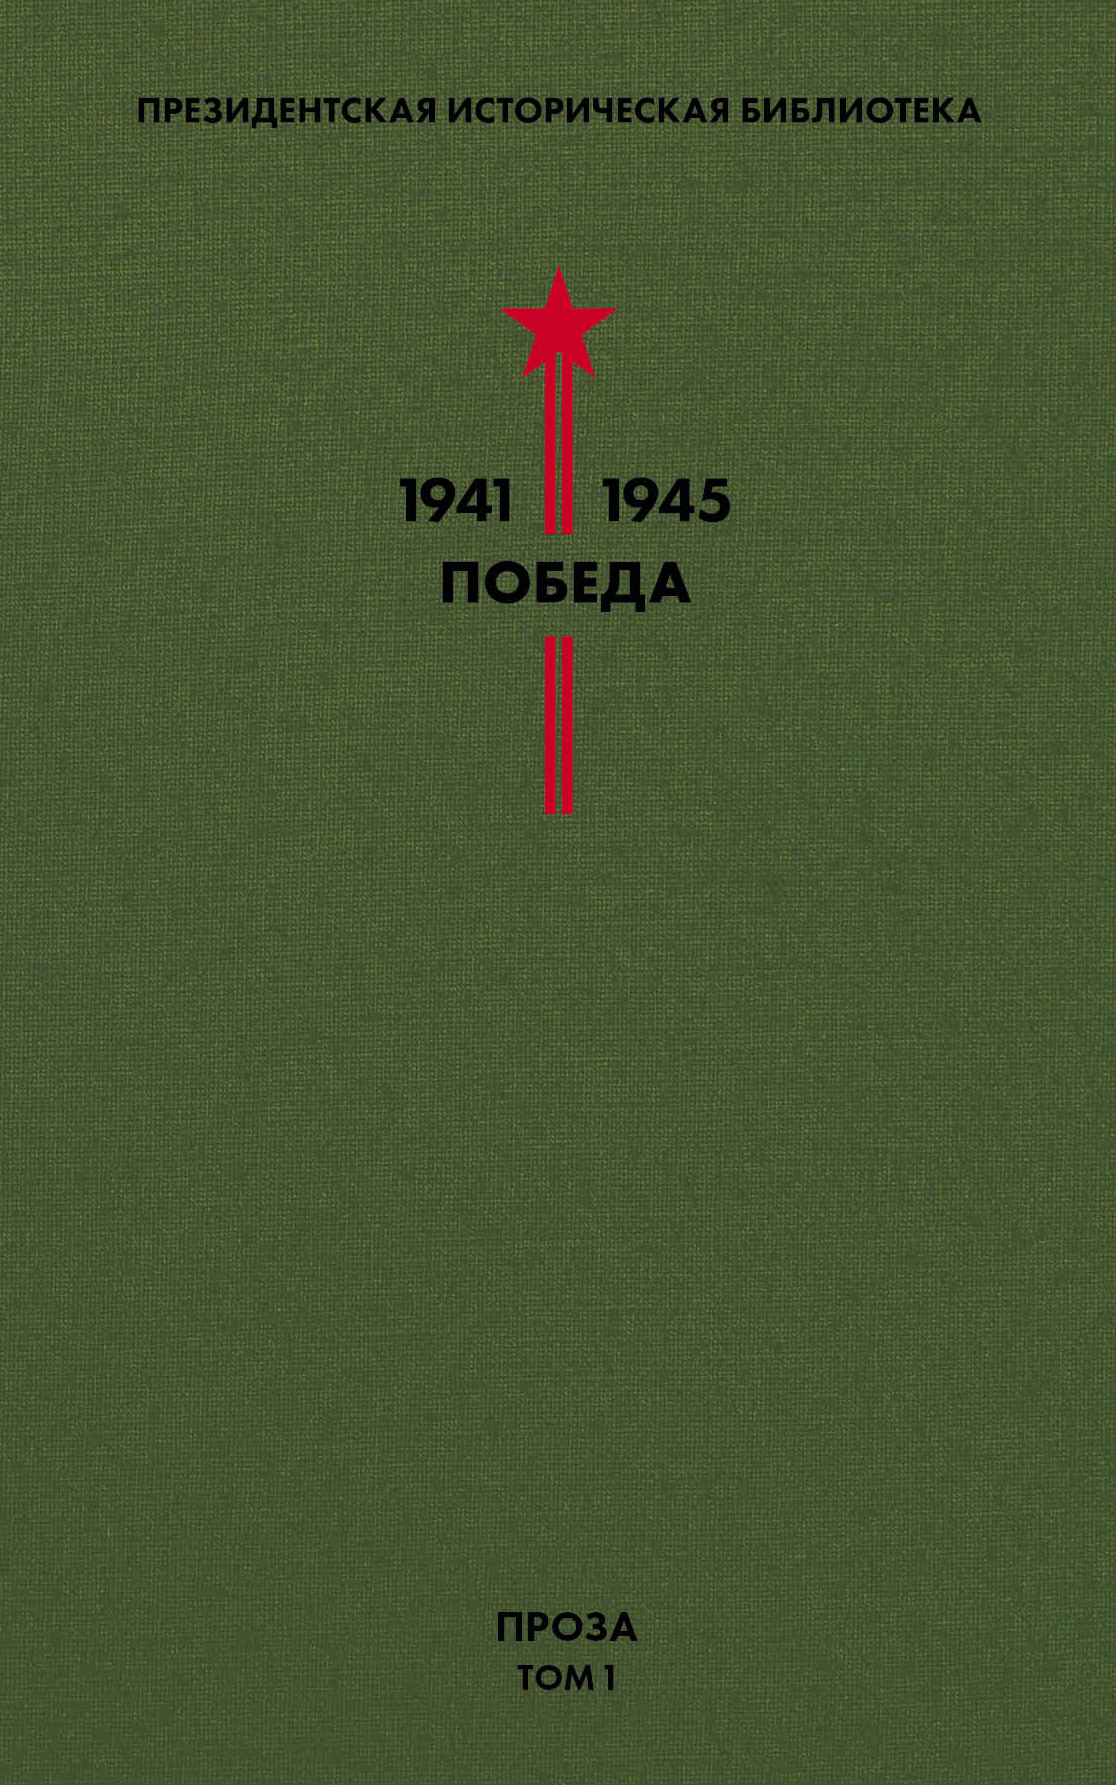 Президентская историческая библиотека. 1941—1945. Победа. Проза. Том 1